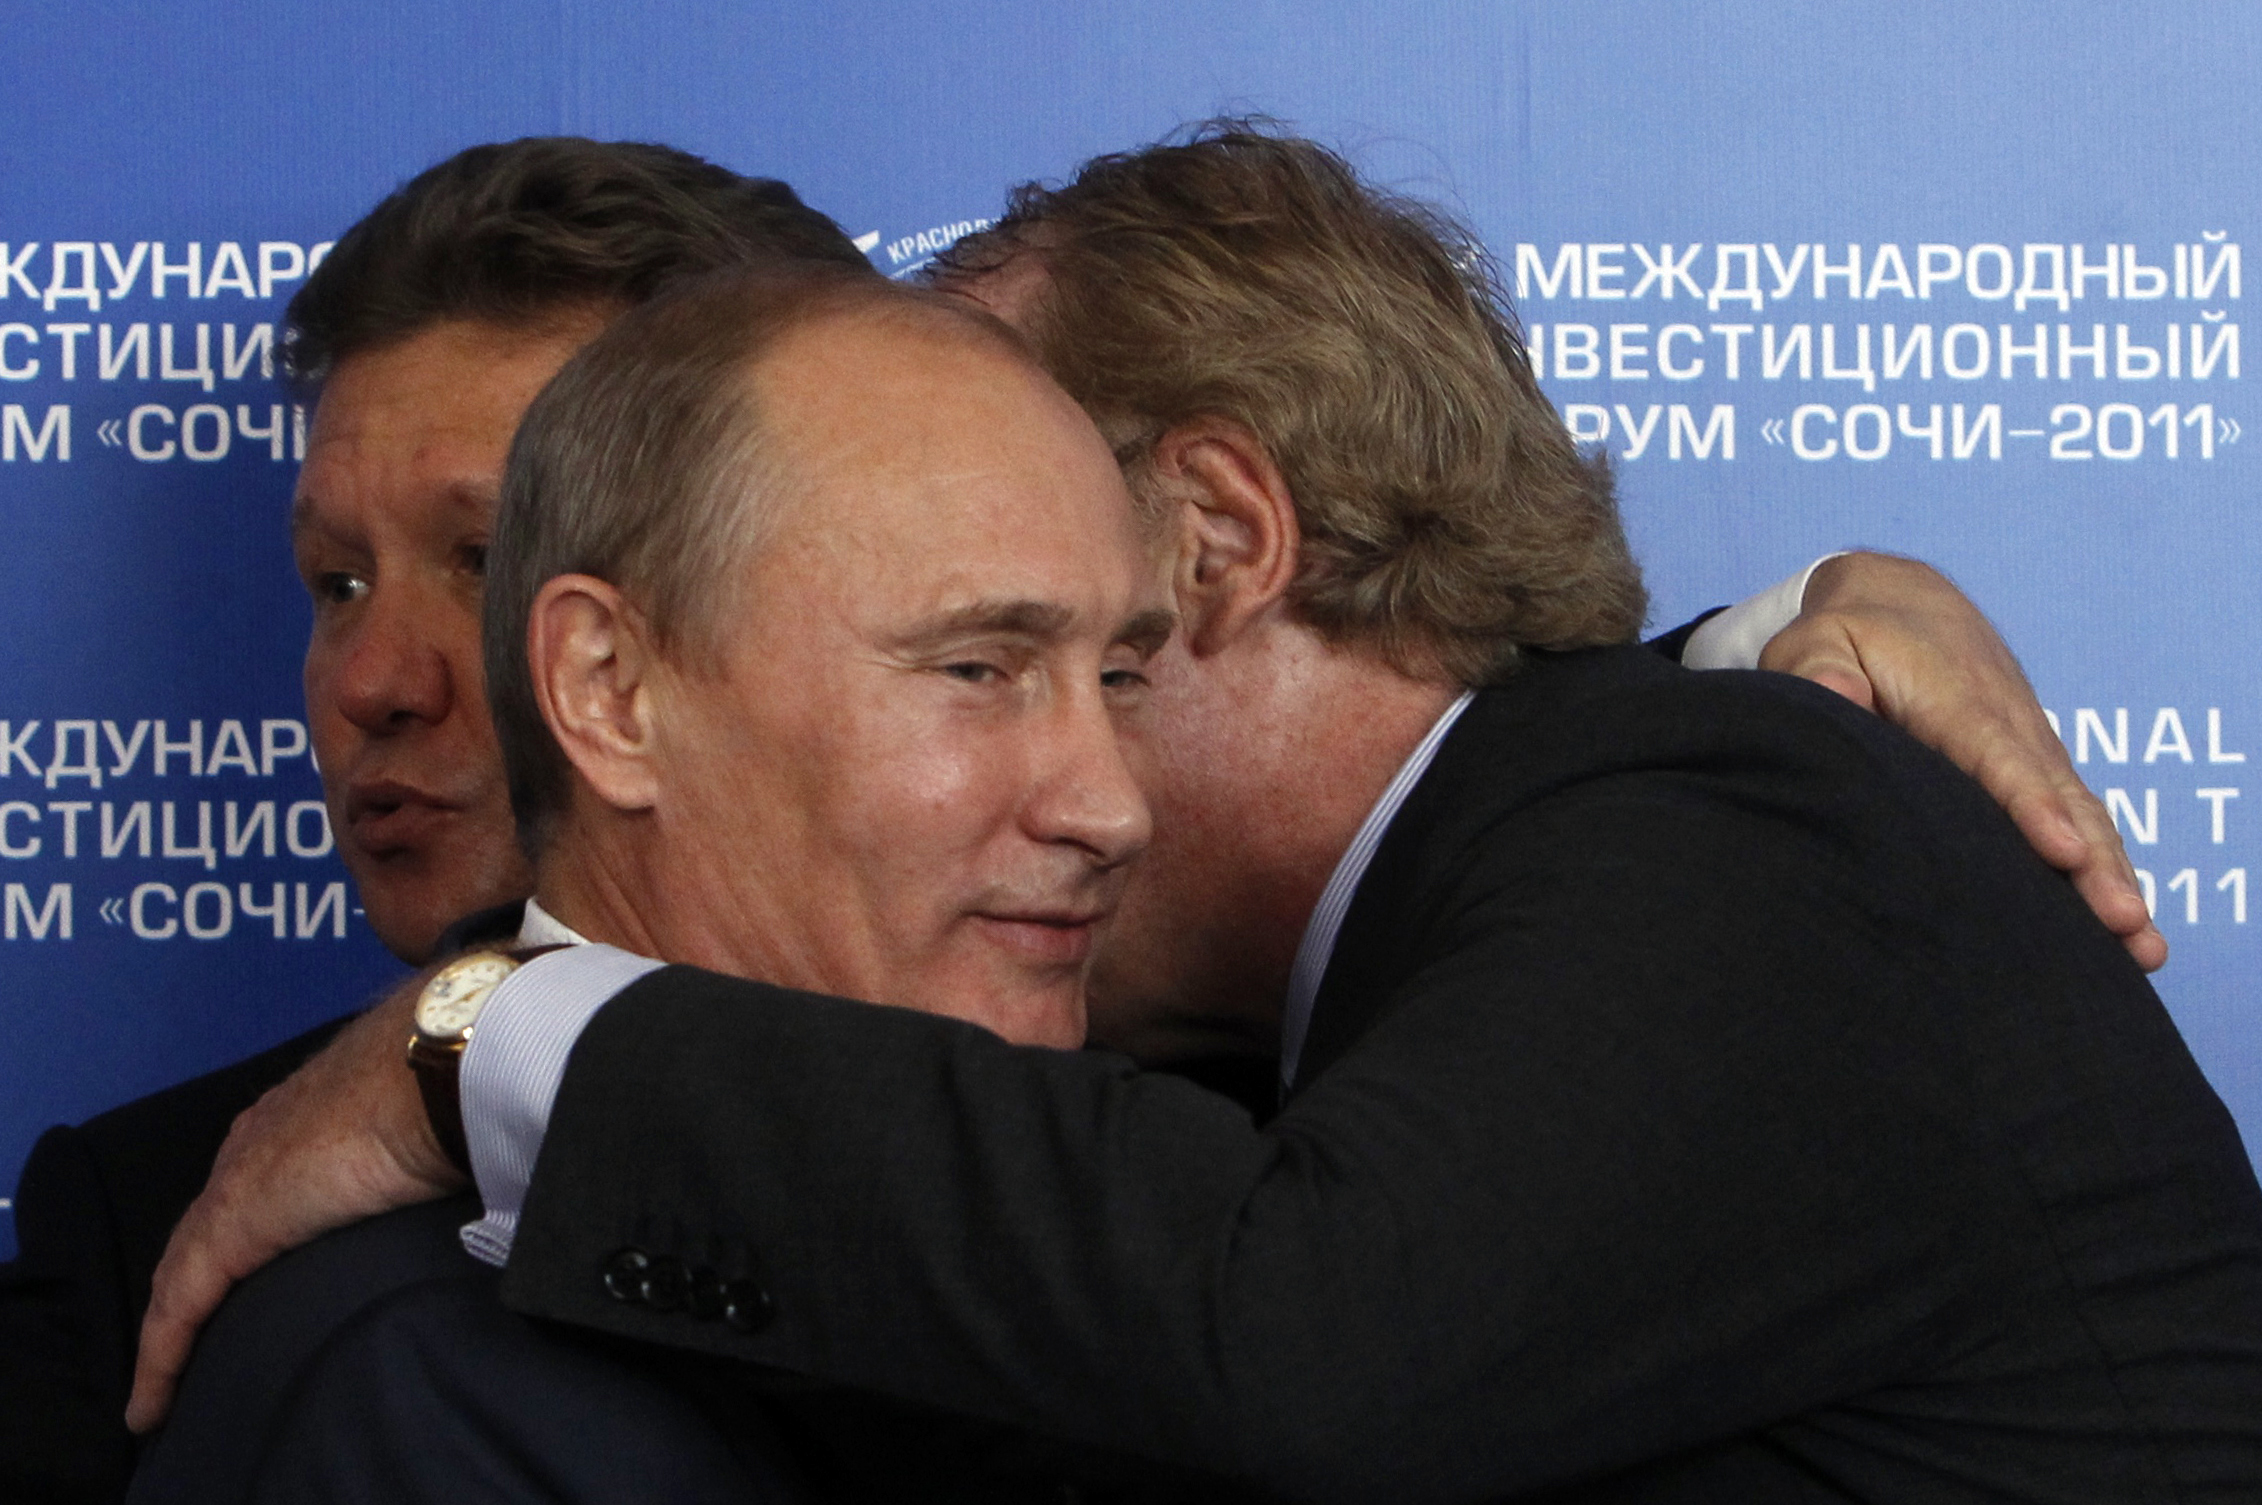 A Déli Áramlatról szóló megállapodás aláírása után Putyin megöleli Paolo Scaronit, az ENI olasz gázóriás első emberét. A háttérben a Gazprom vezére, Alexej Miller